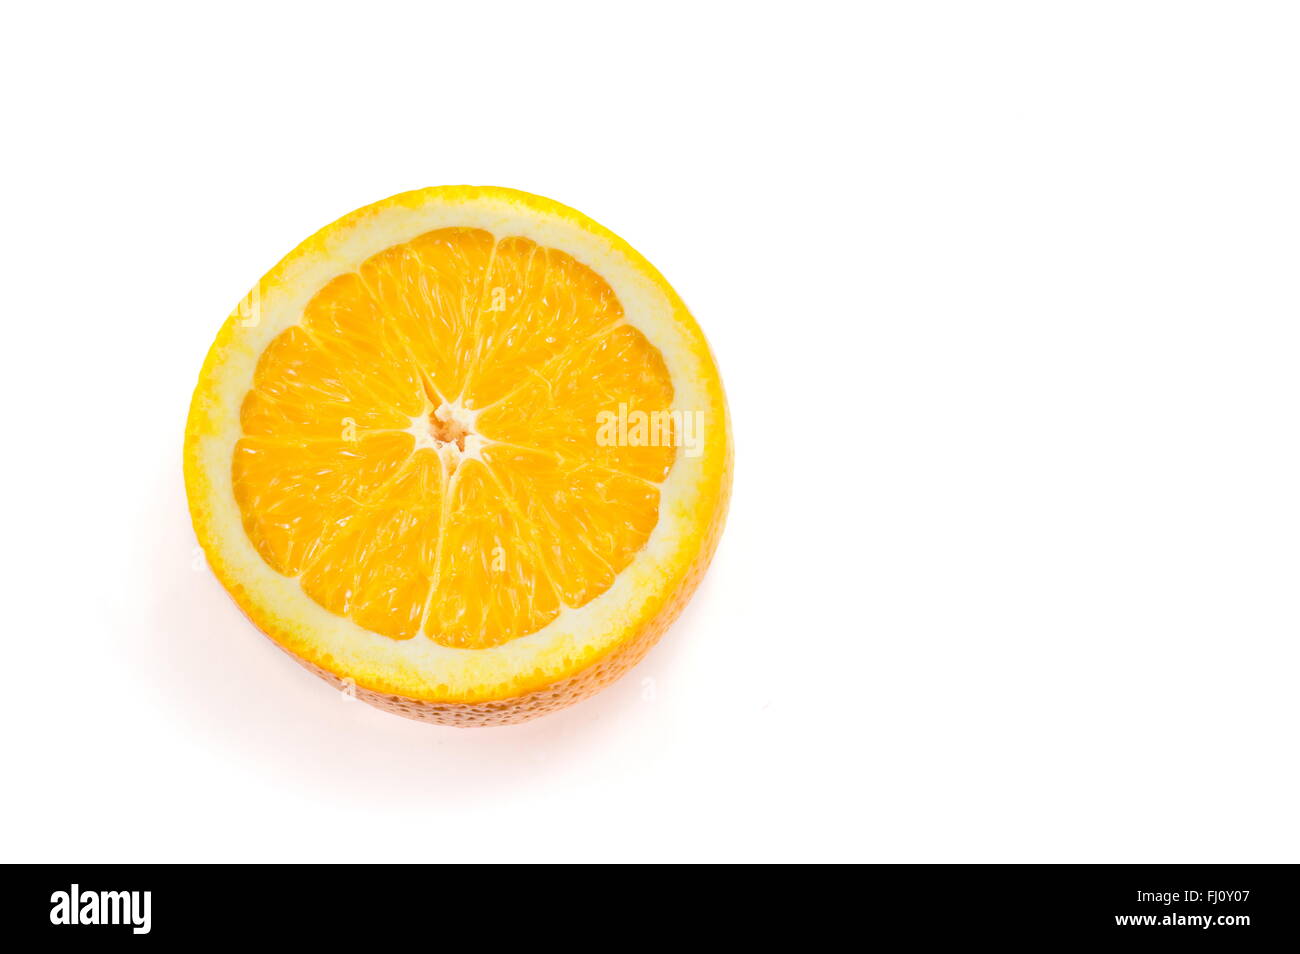 halved orange isolated on white Stock Photo